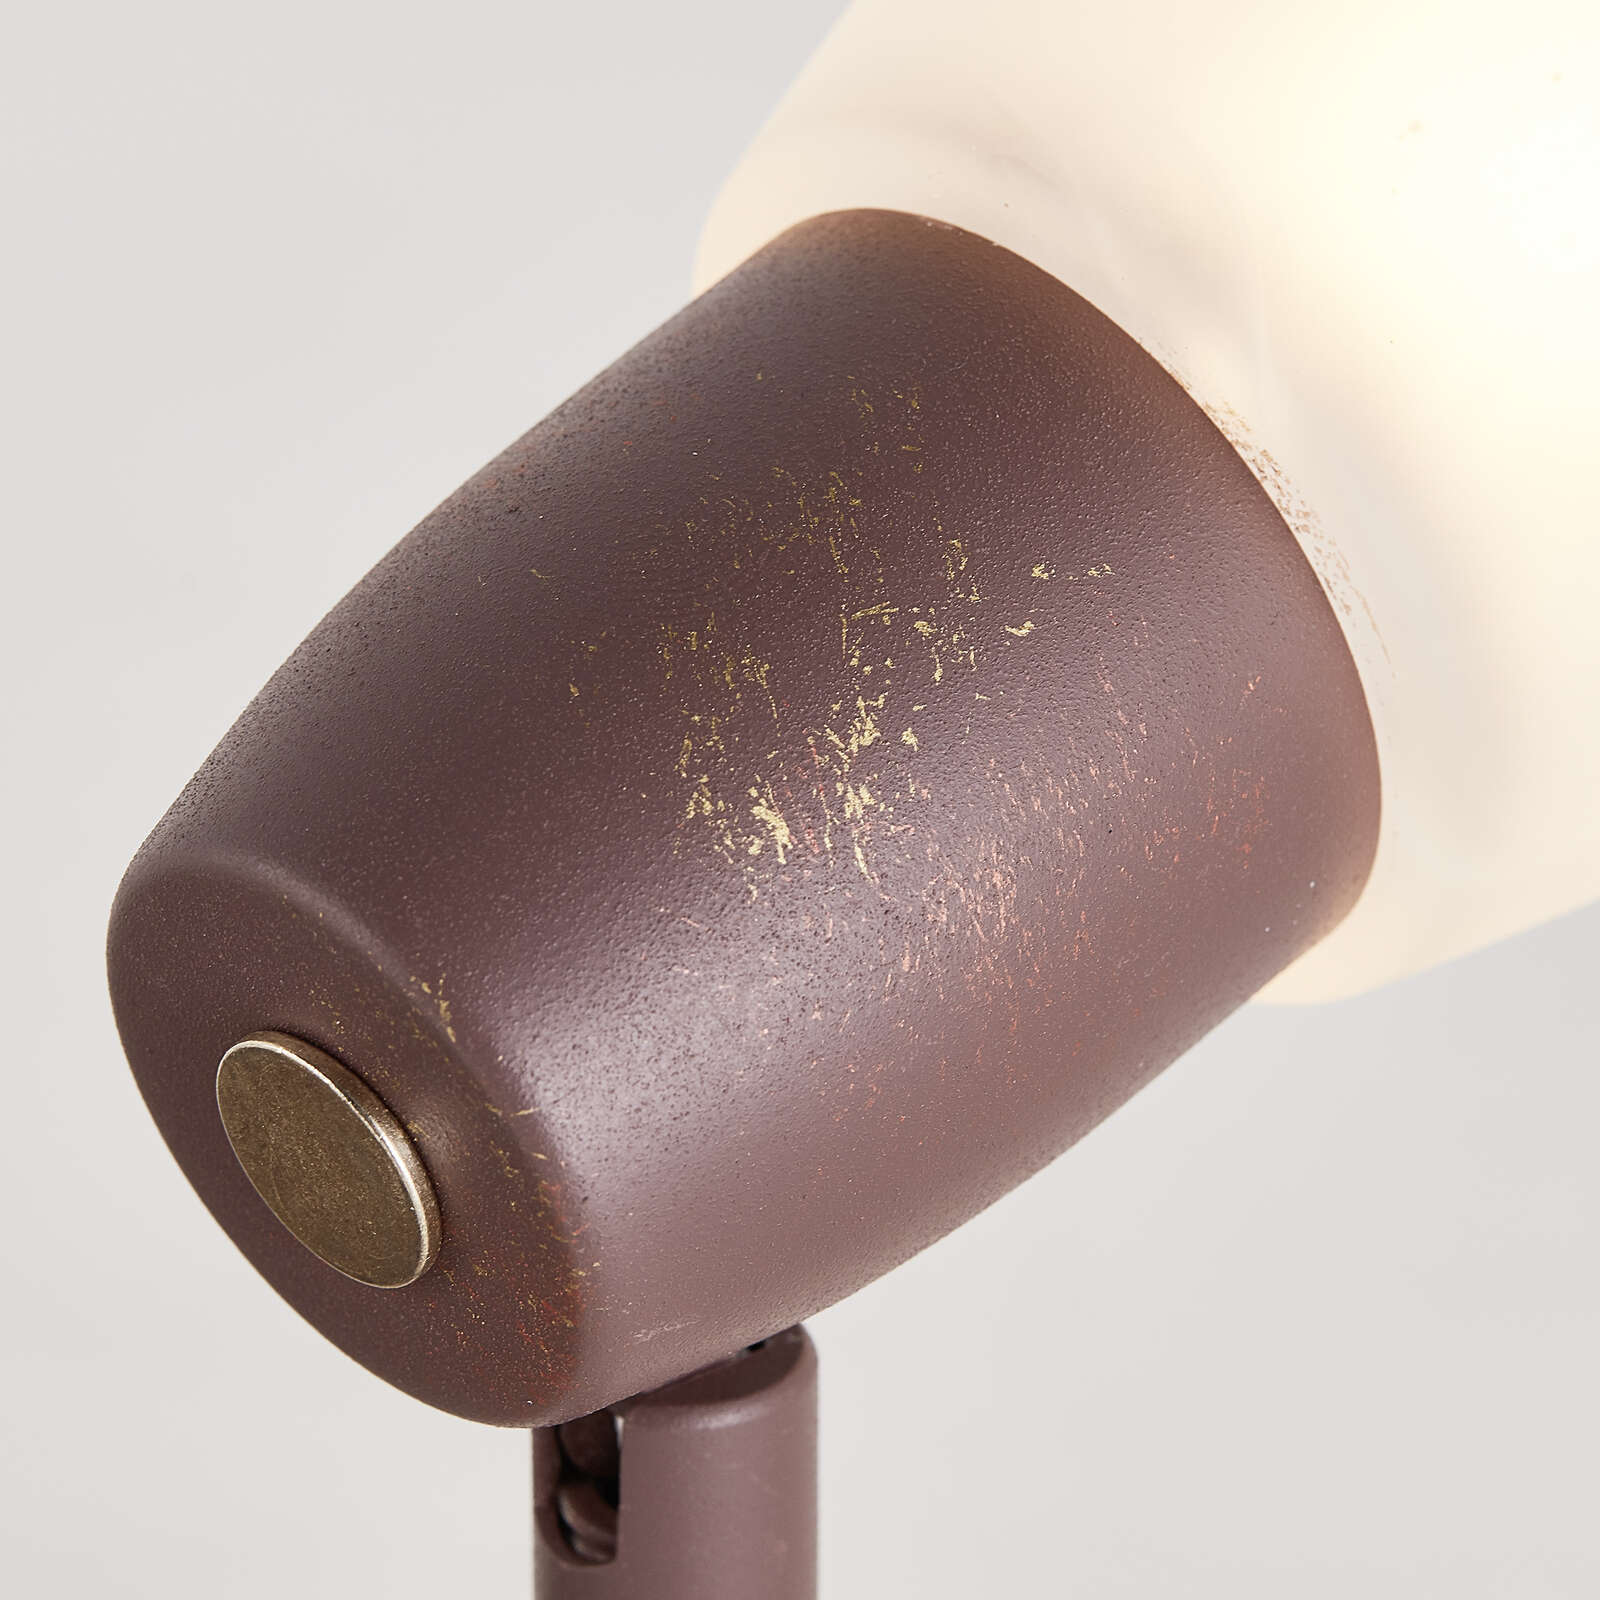             Glass spotlight tube - Linus - Copper
        